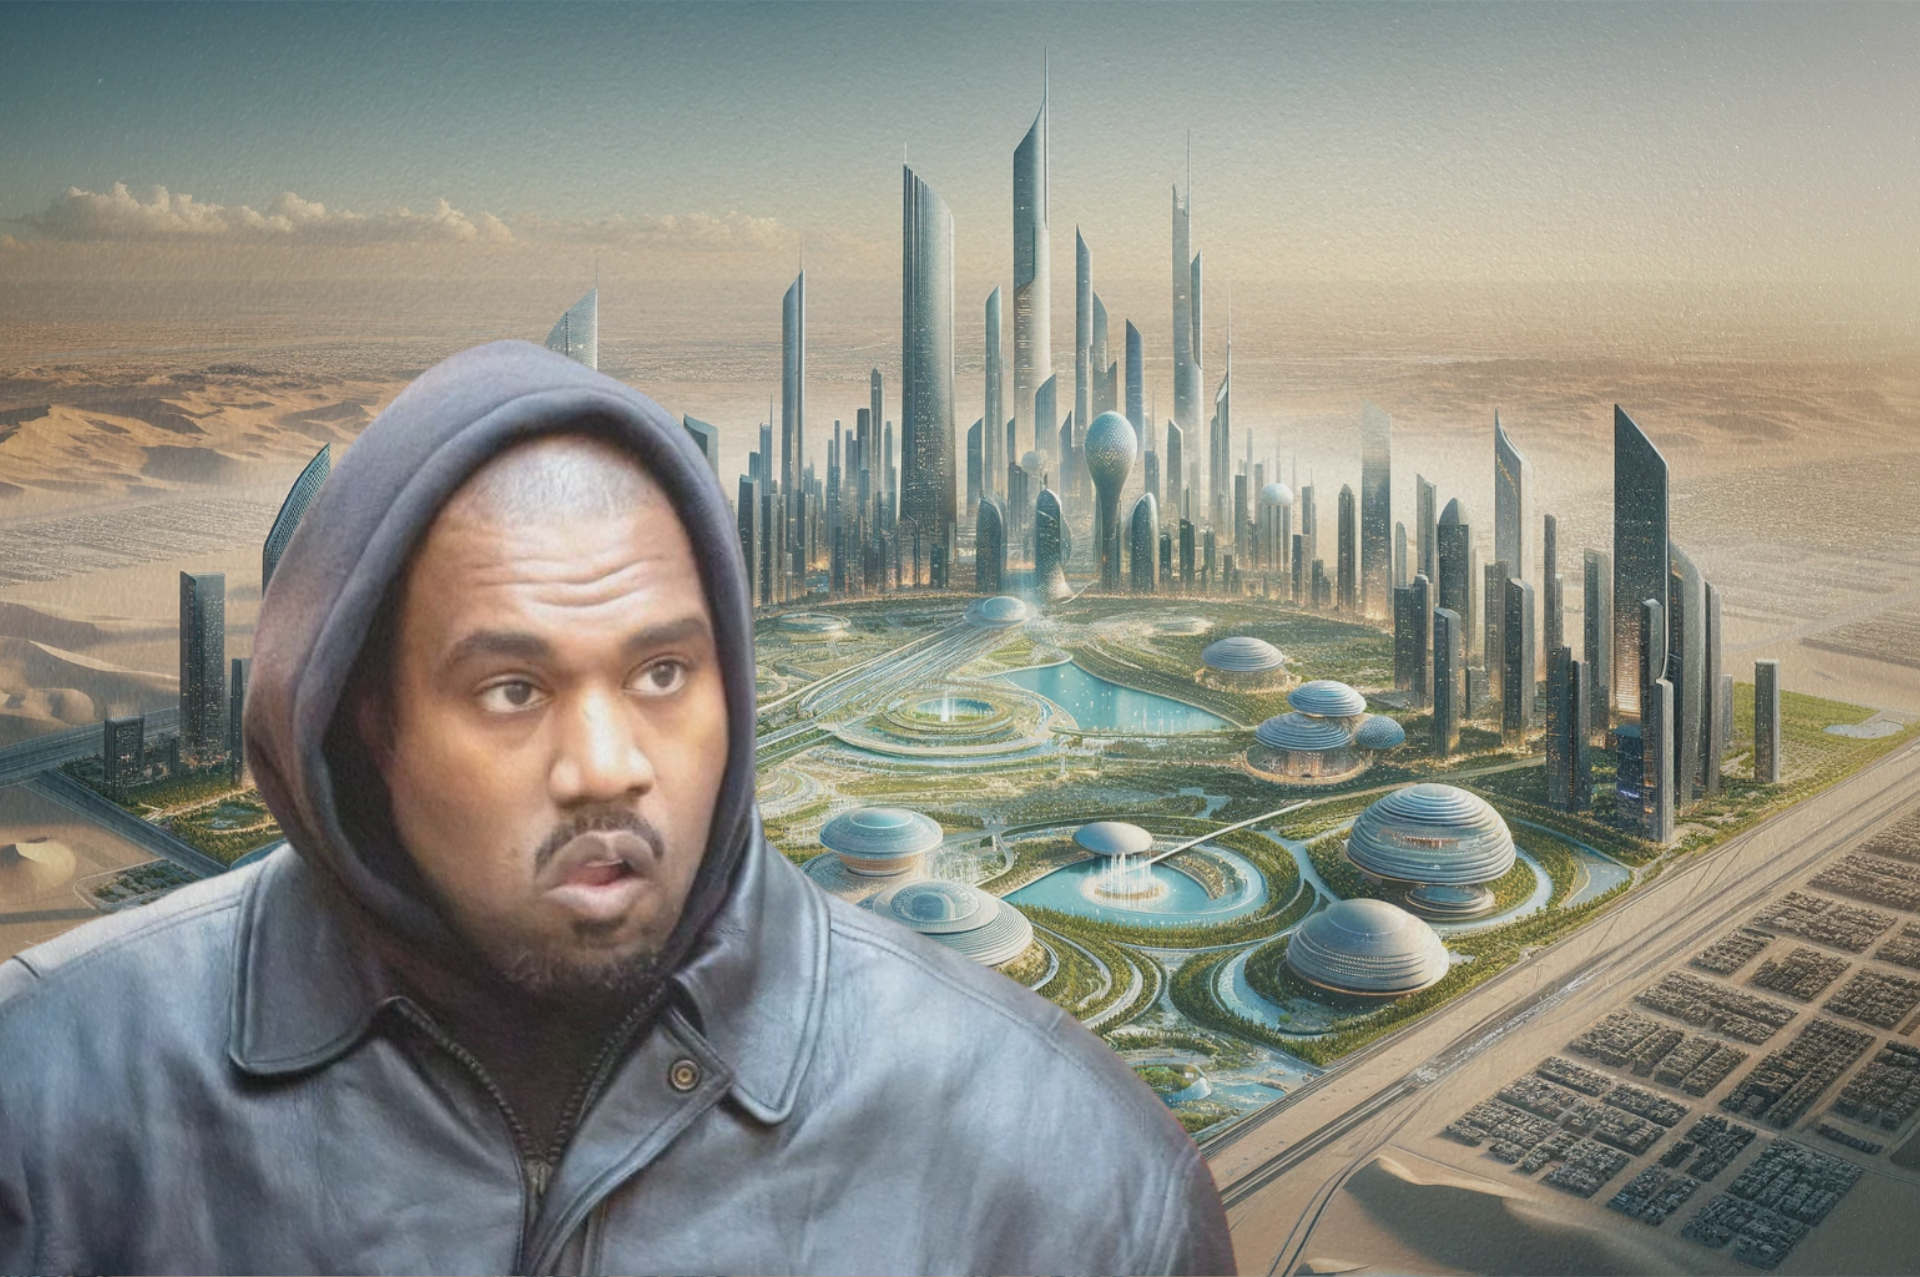 Kanye West construiría ciudad futurista en Oriente Medio